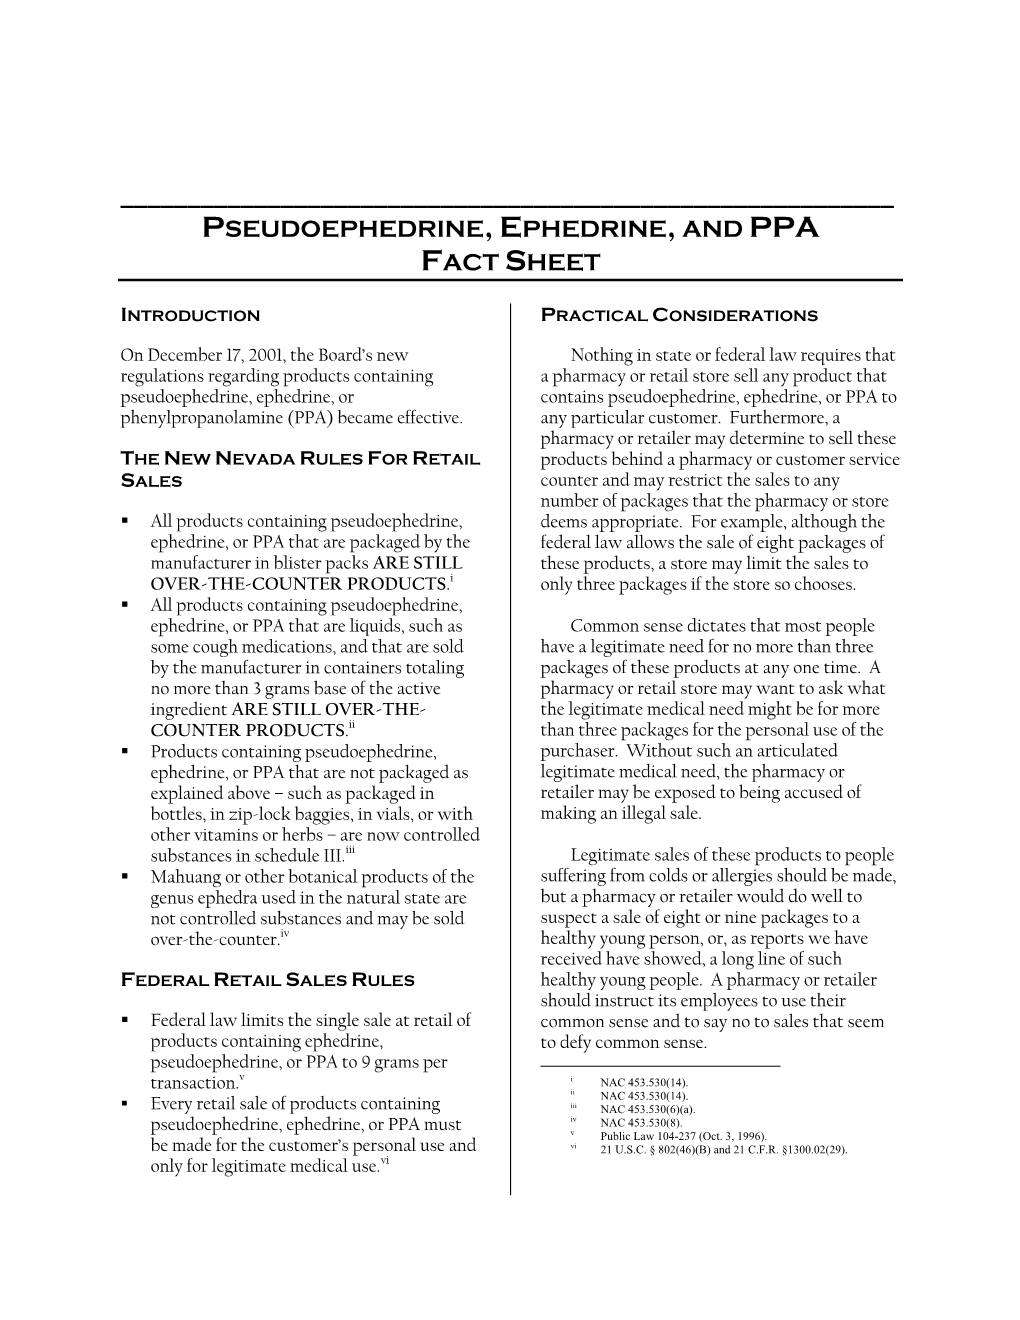 Pseudoephedrine, Ephedrine, and Ppa Fact Sheet